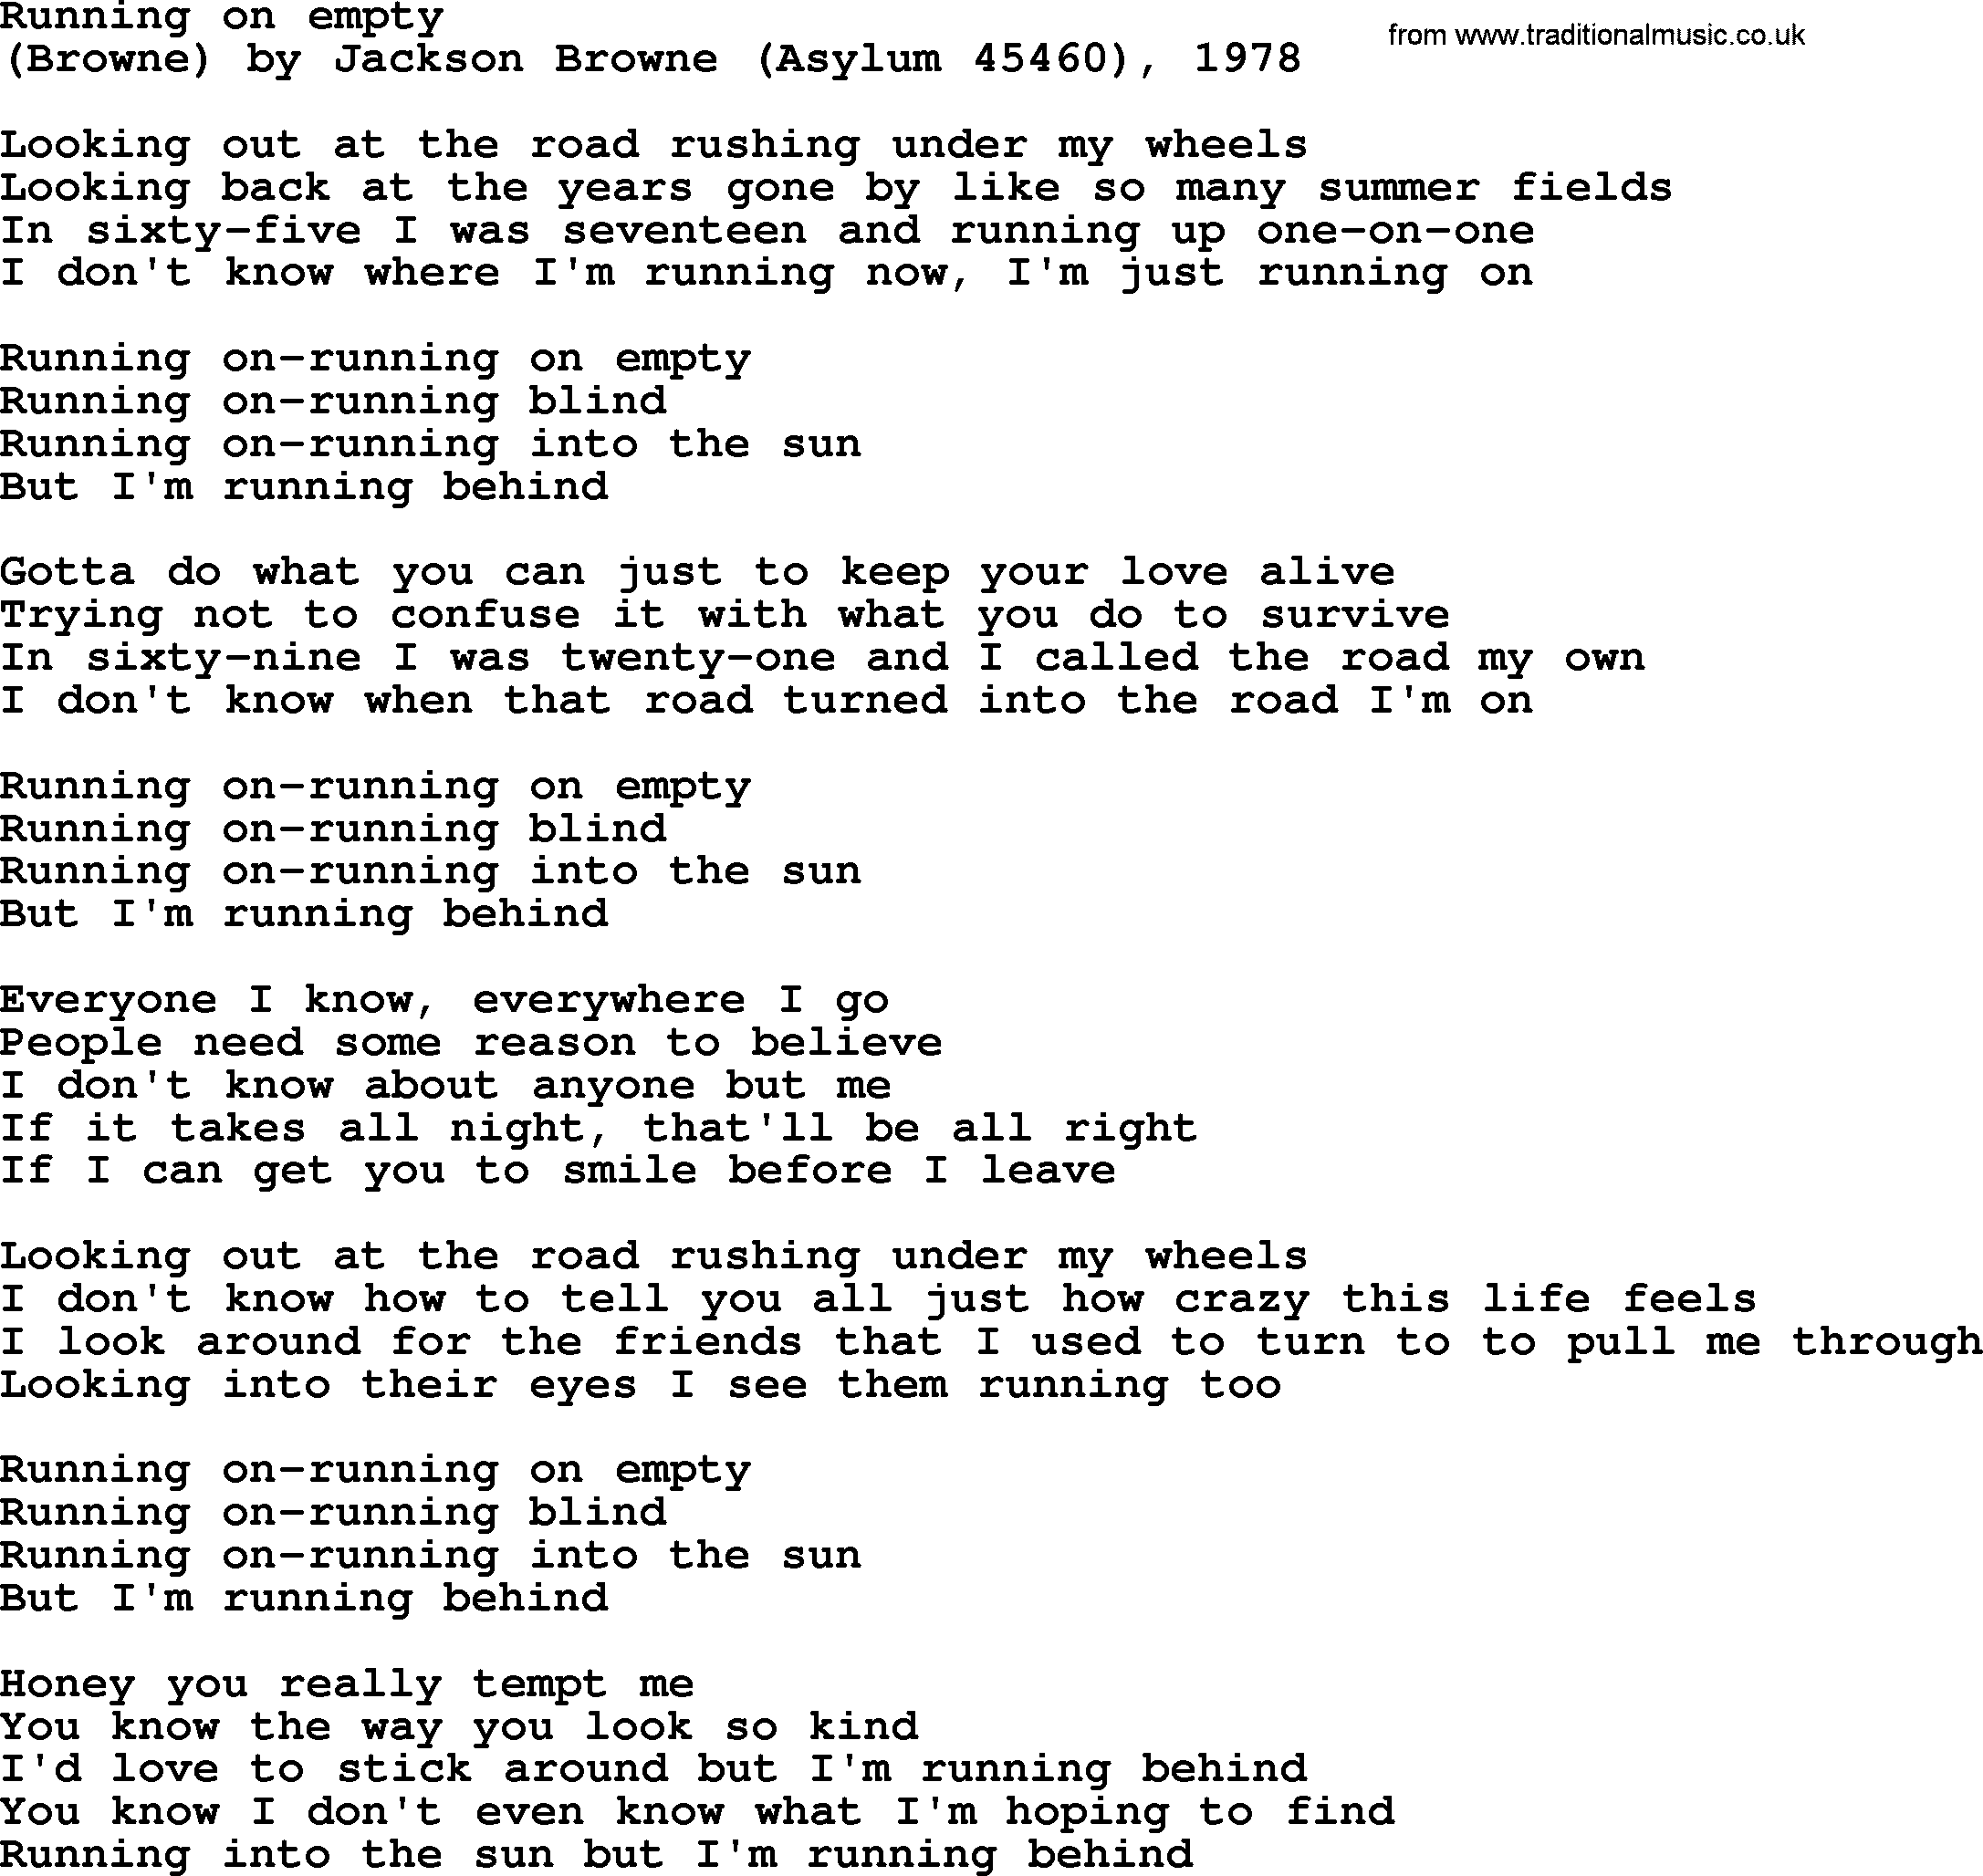 Bruce Springsteen song: Running On Empty lyrics